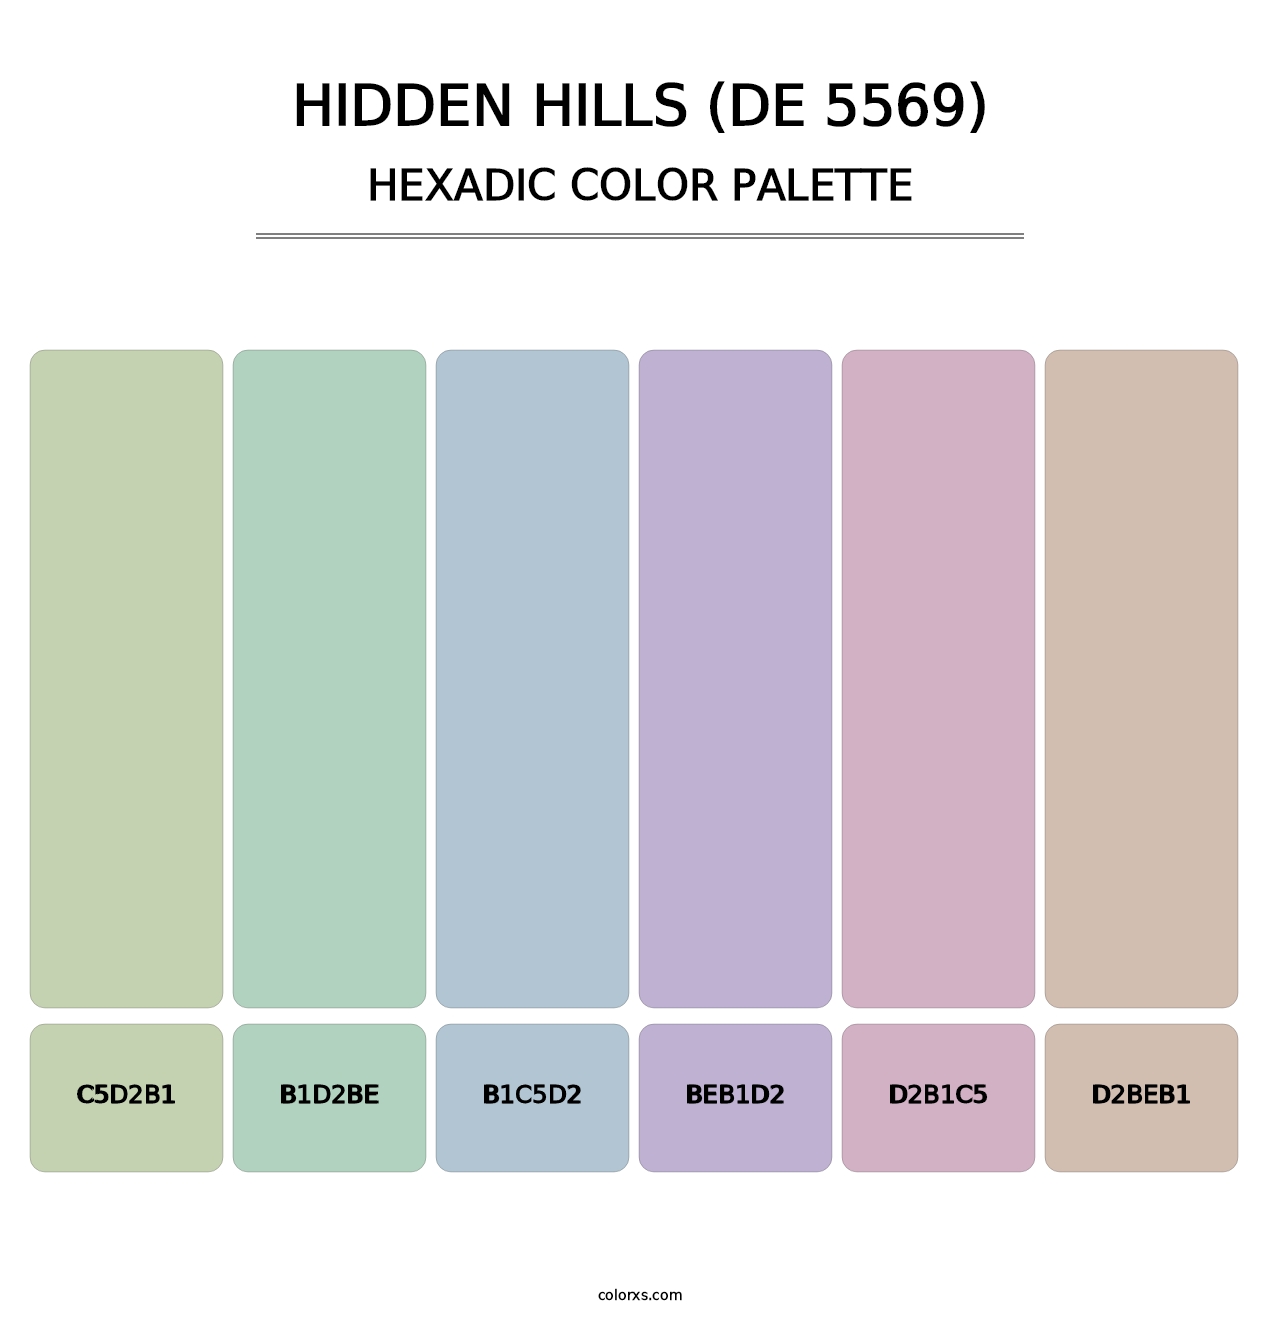 Hidden Hills (DE 5569) - Hexadic Color Palette